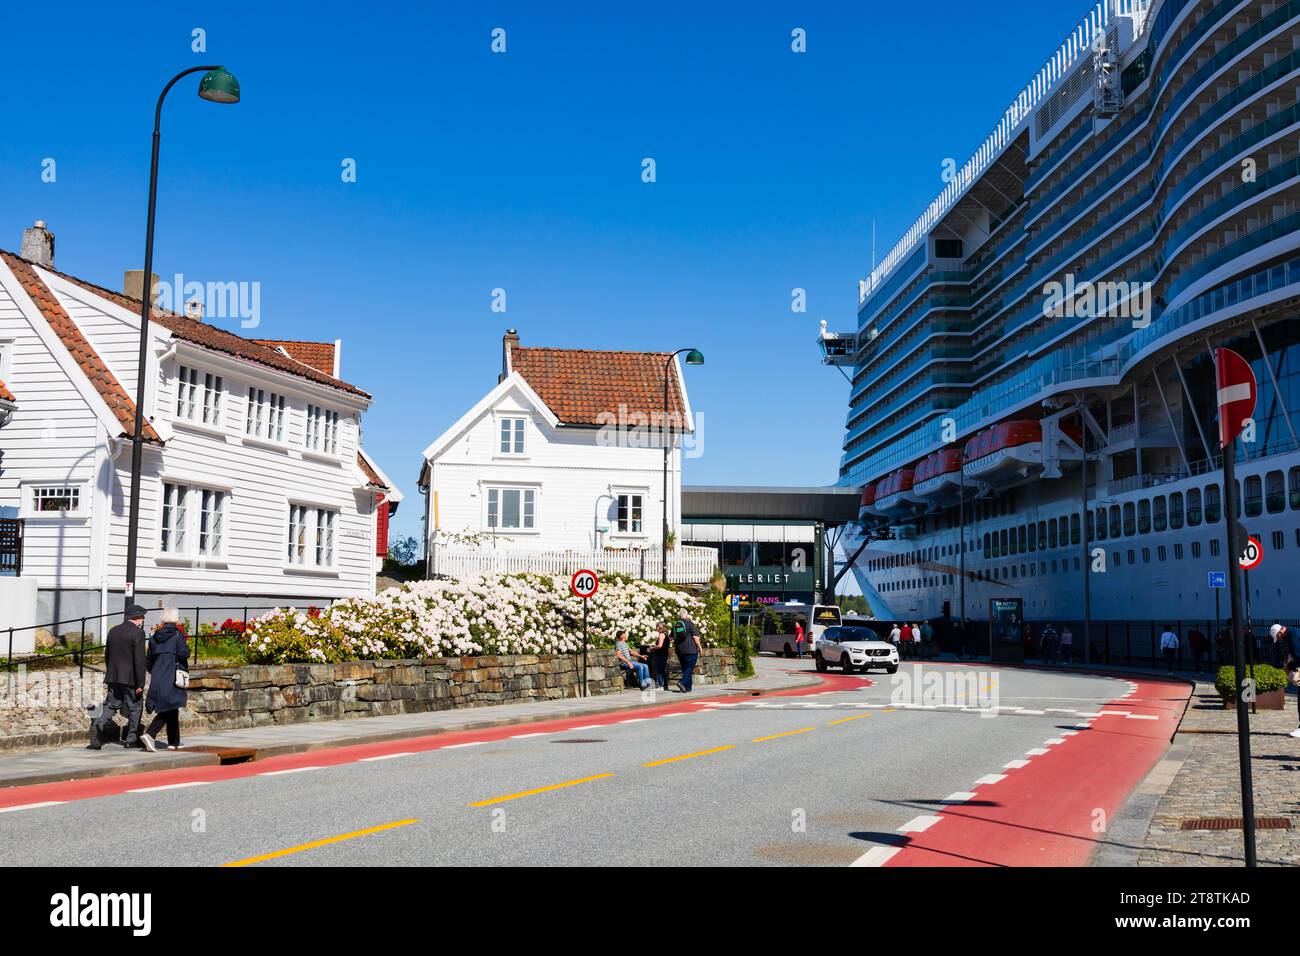 Maison traditionnelle en bois blanc éclipsée par la visite d'un grand navire de croisière, le MS Iona, sur le quai. Nerde Strandgate, avec des gens walking.Stavanger, Norw Banque D'Images